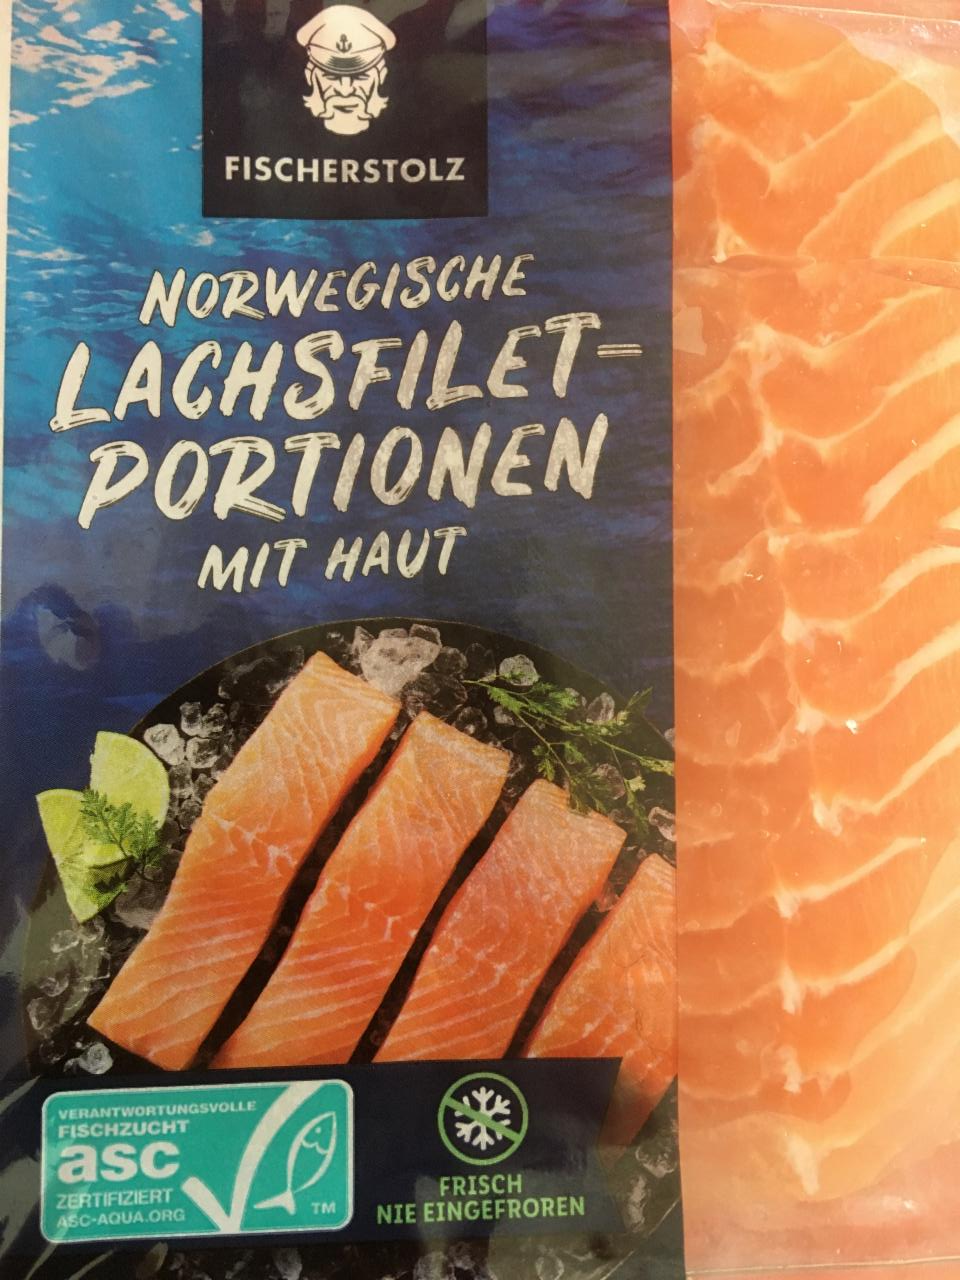 Фото - норвежский лосось Norwegische Lachsfilet-Portionen mit haut Fischerstolz